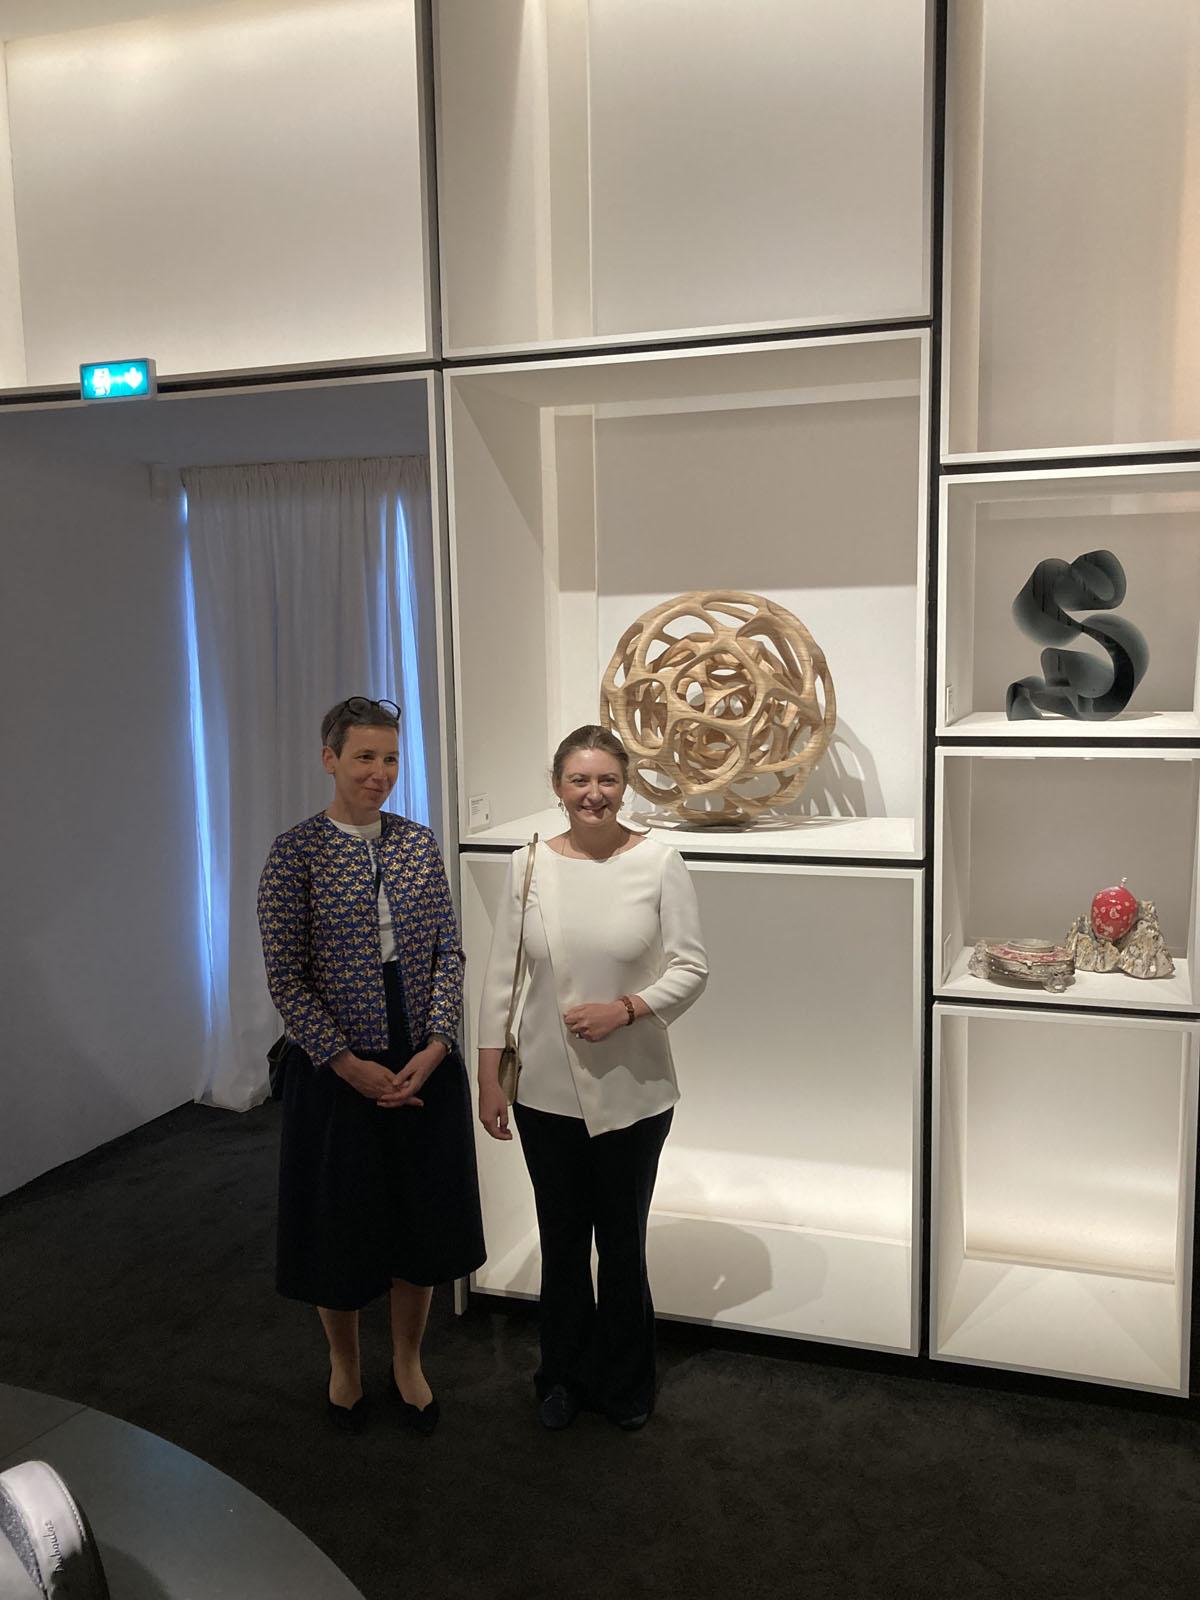 La Princesse et la ministre devant une oeuvre d'un artiste luxembourgeois